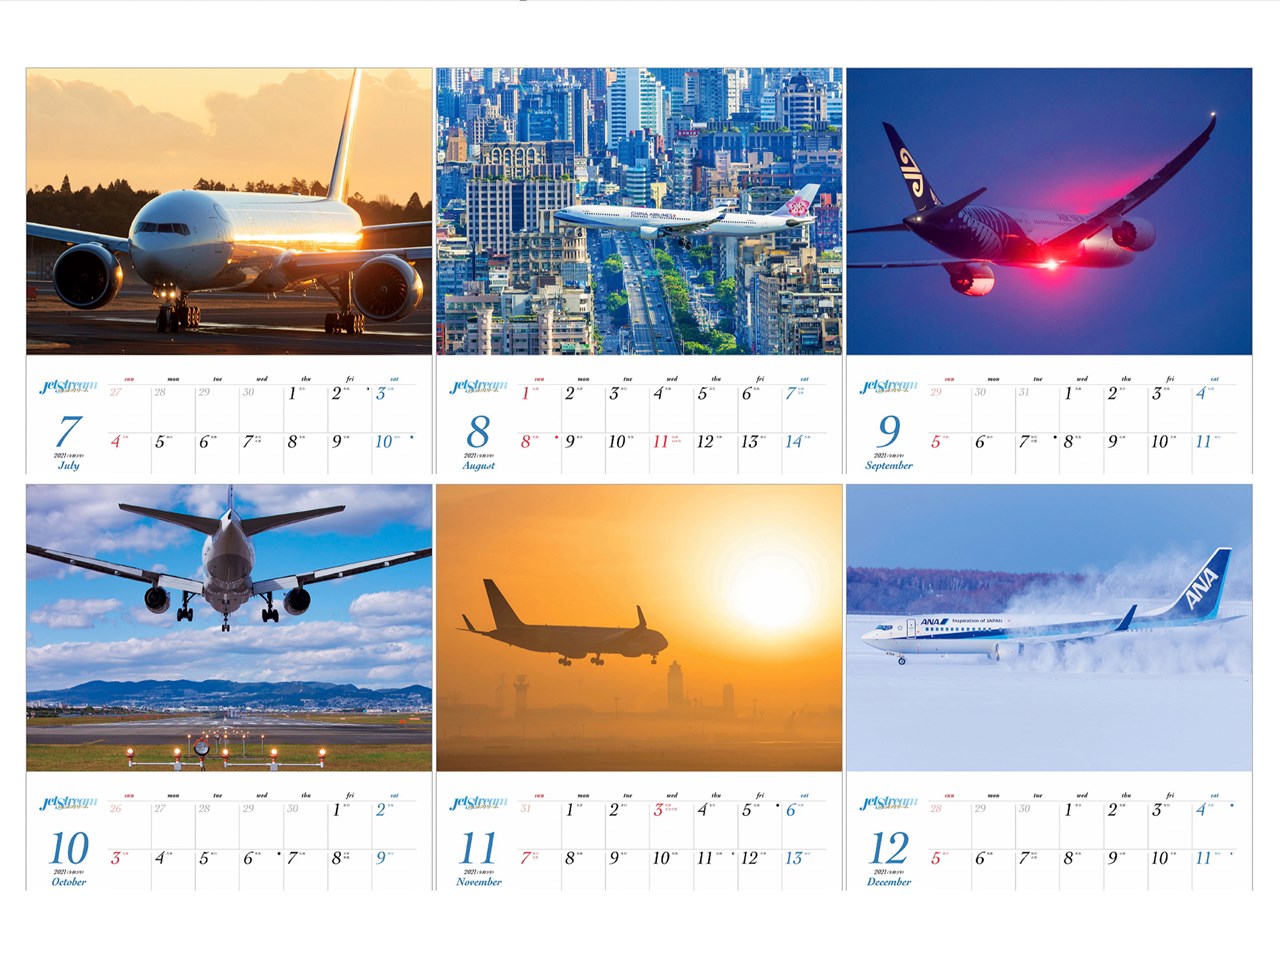 楽天ブックス ジェットストリーム 飛行機情景写真 21年 カレンダー 壁掛け 風景 三好 航一 本